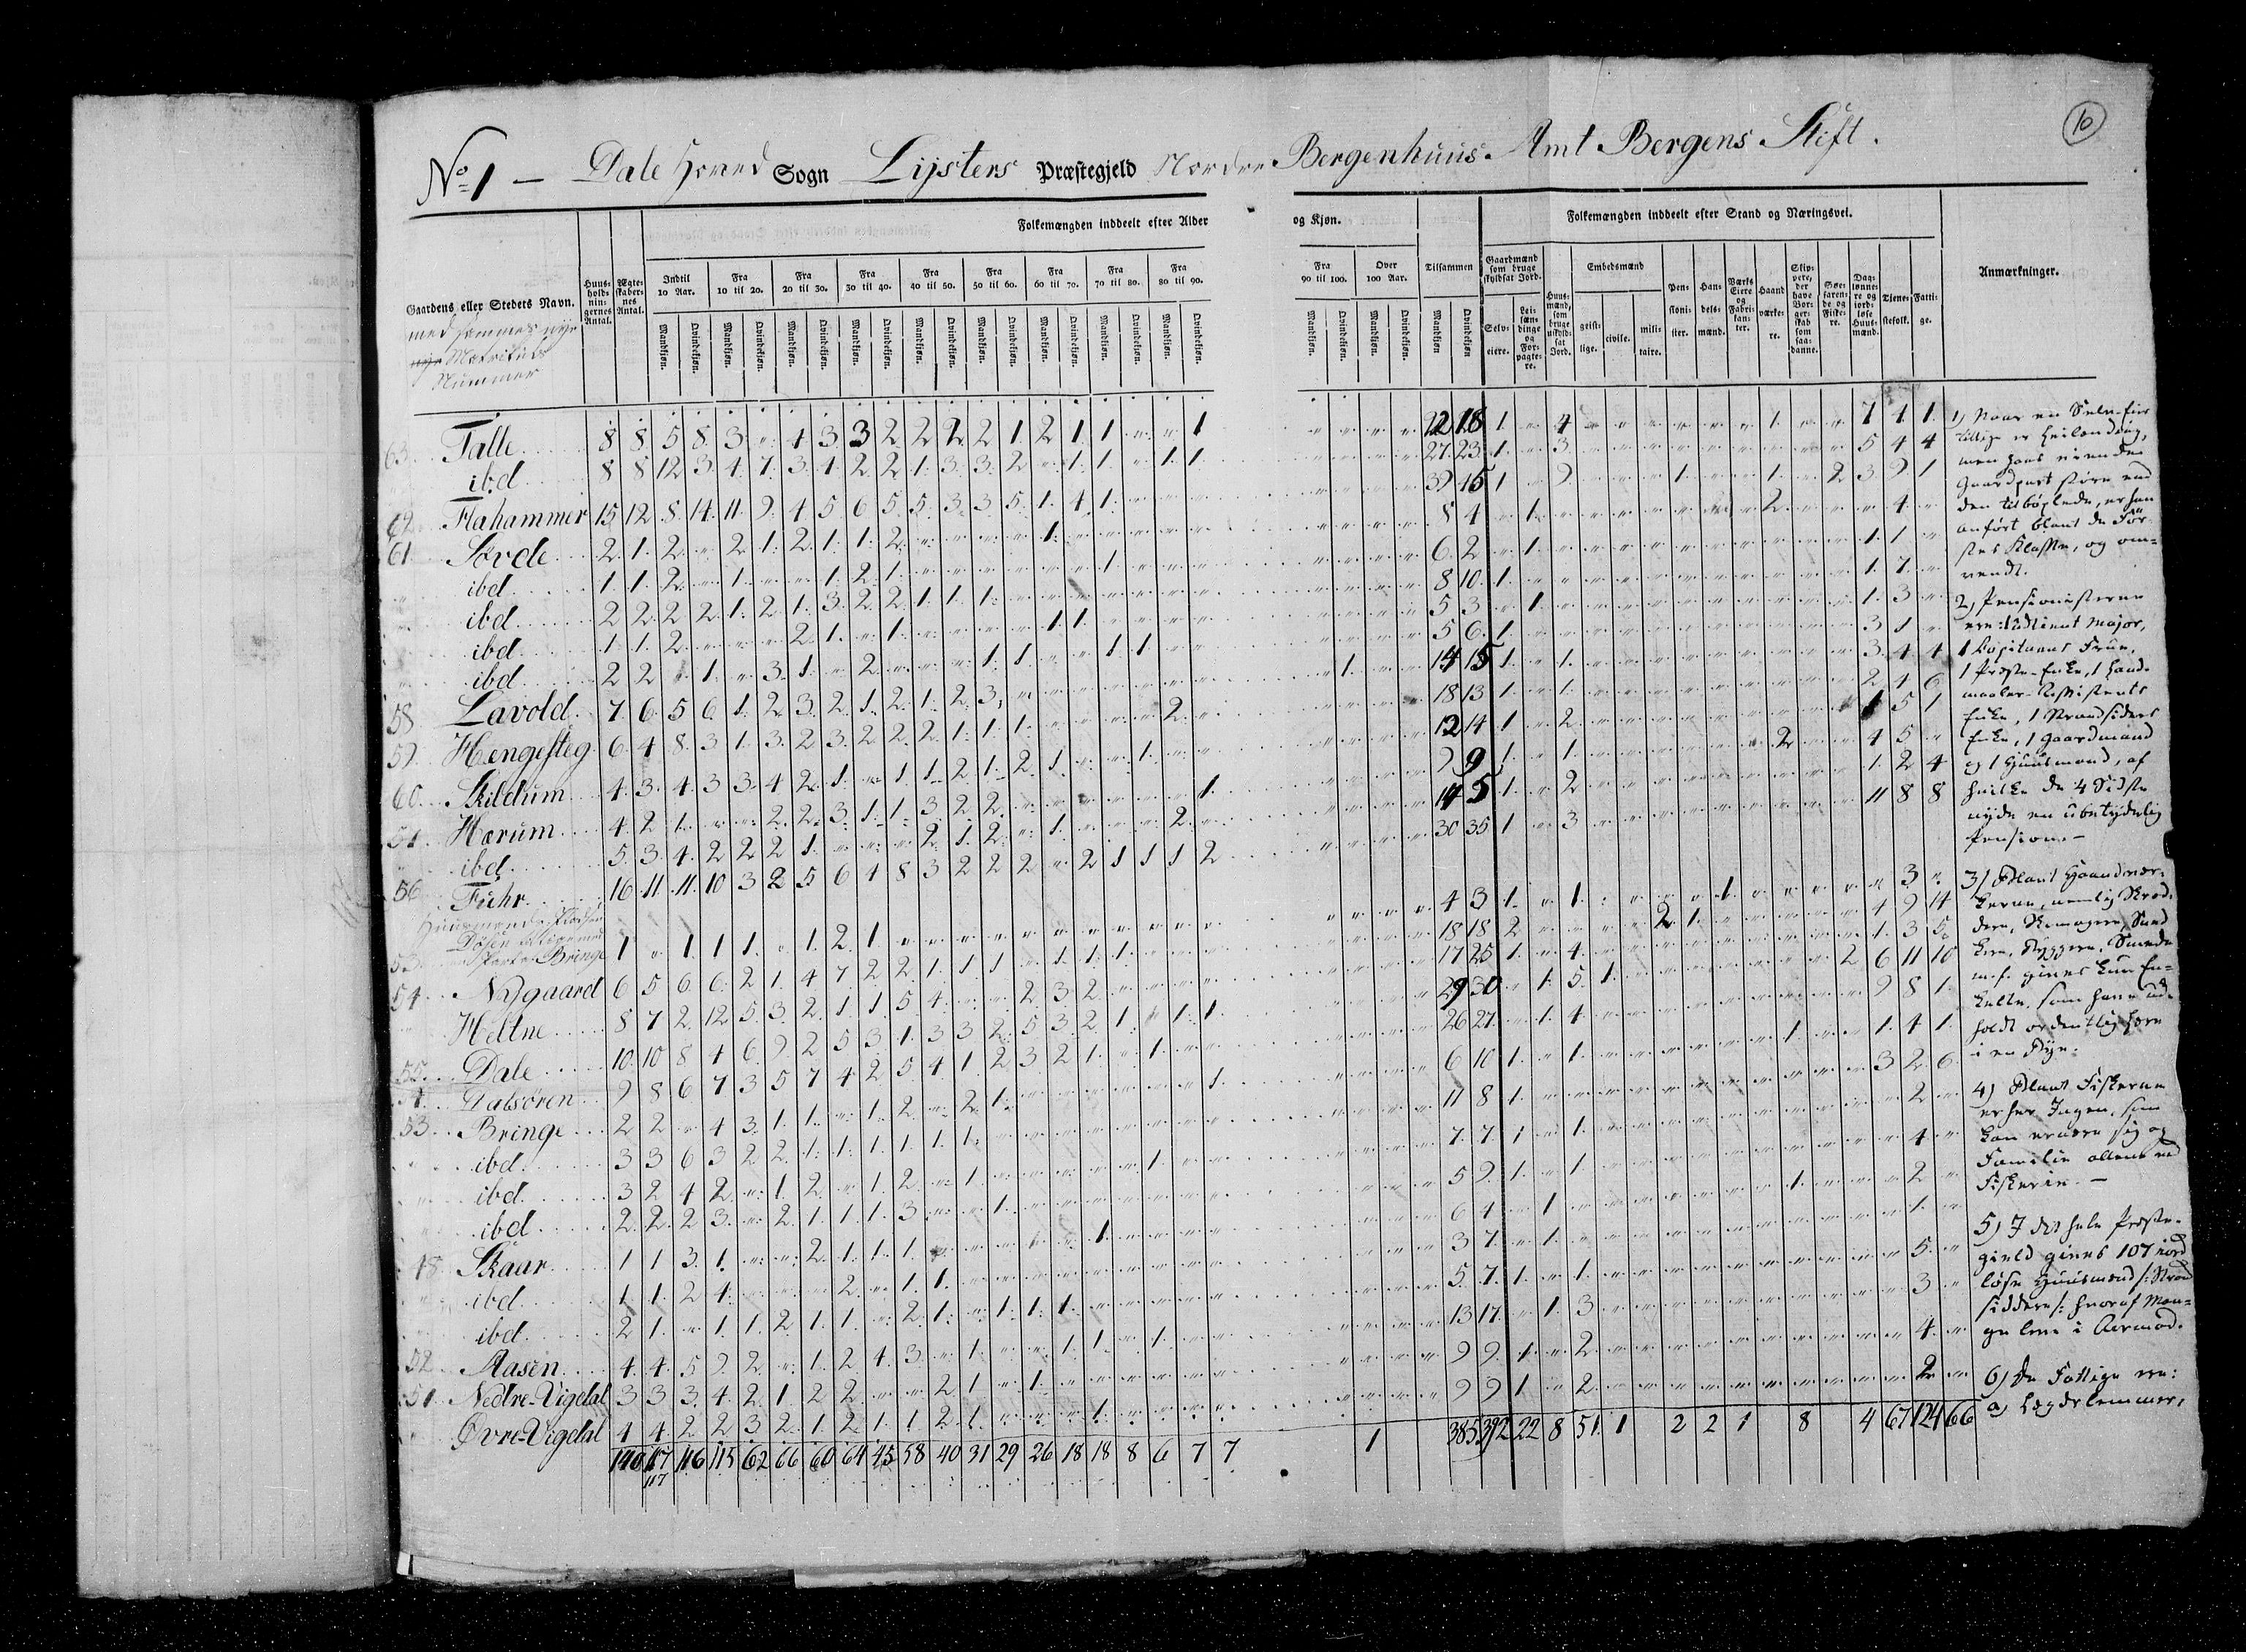 RA, Census 1825, vol. 14: Nordre Bergenhus amt, 1825, p. 10